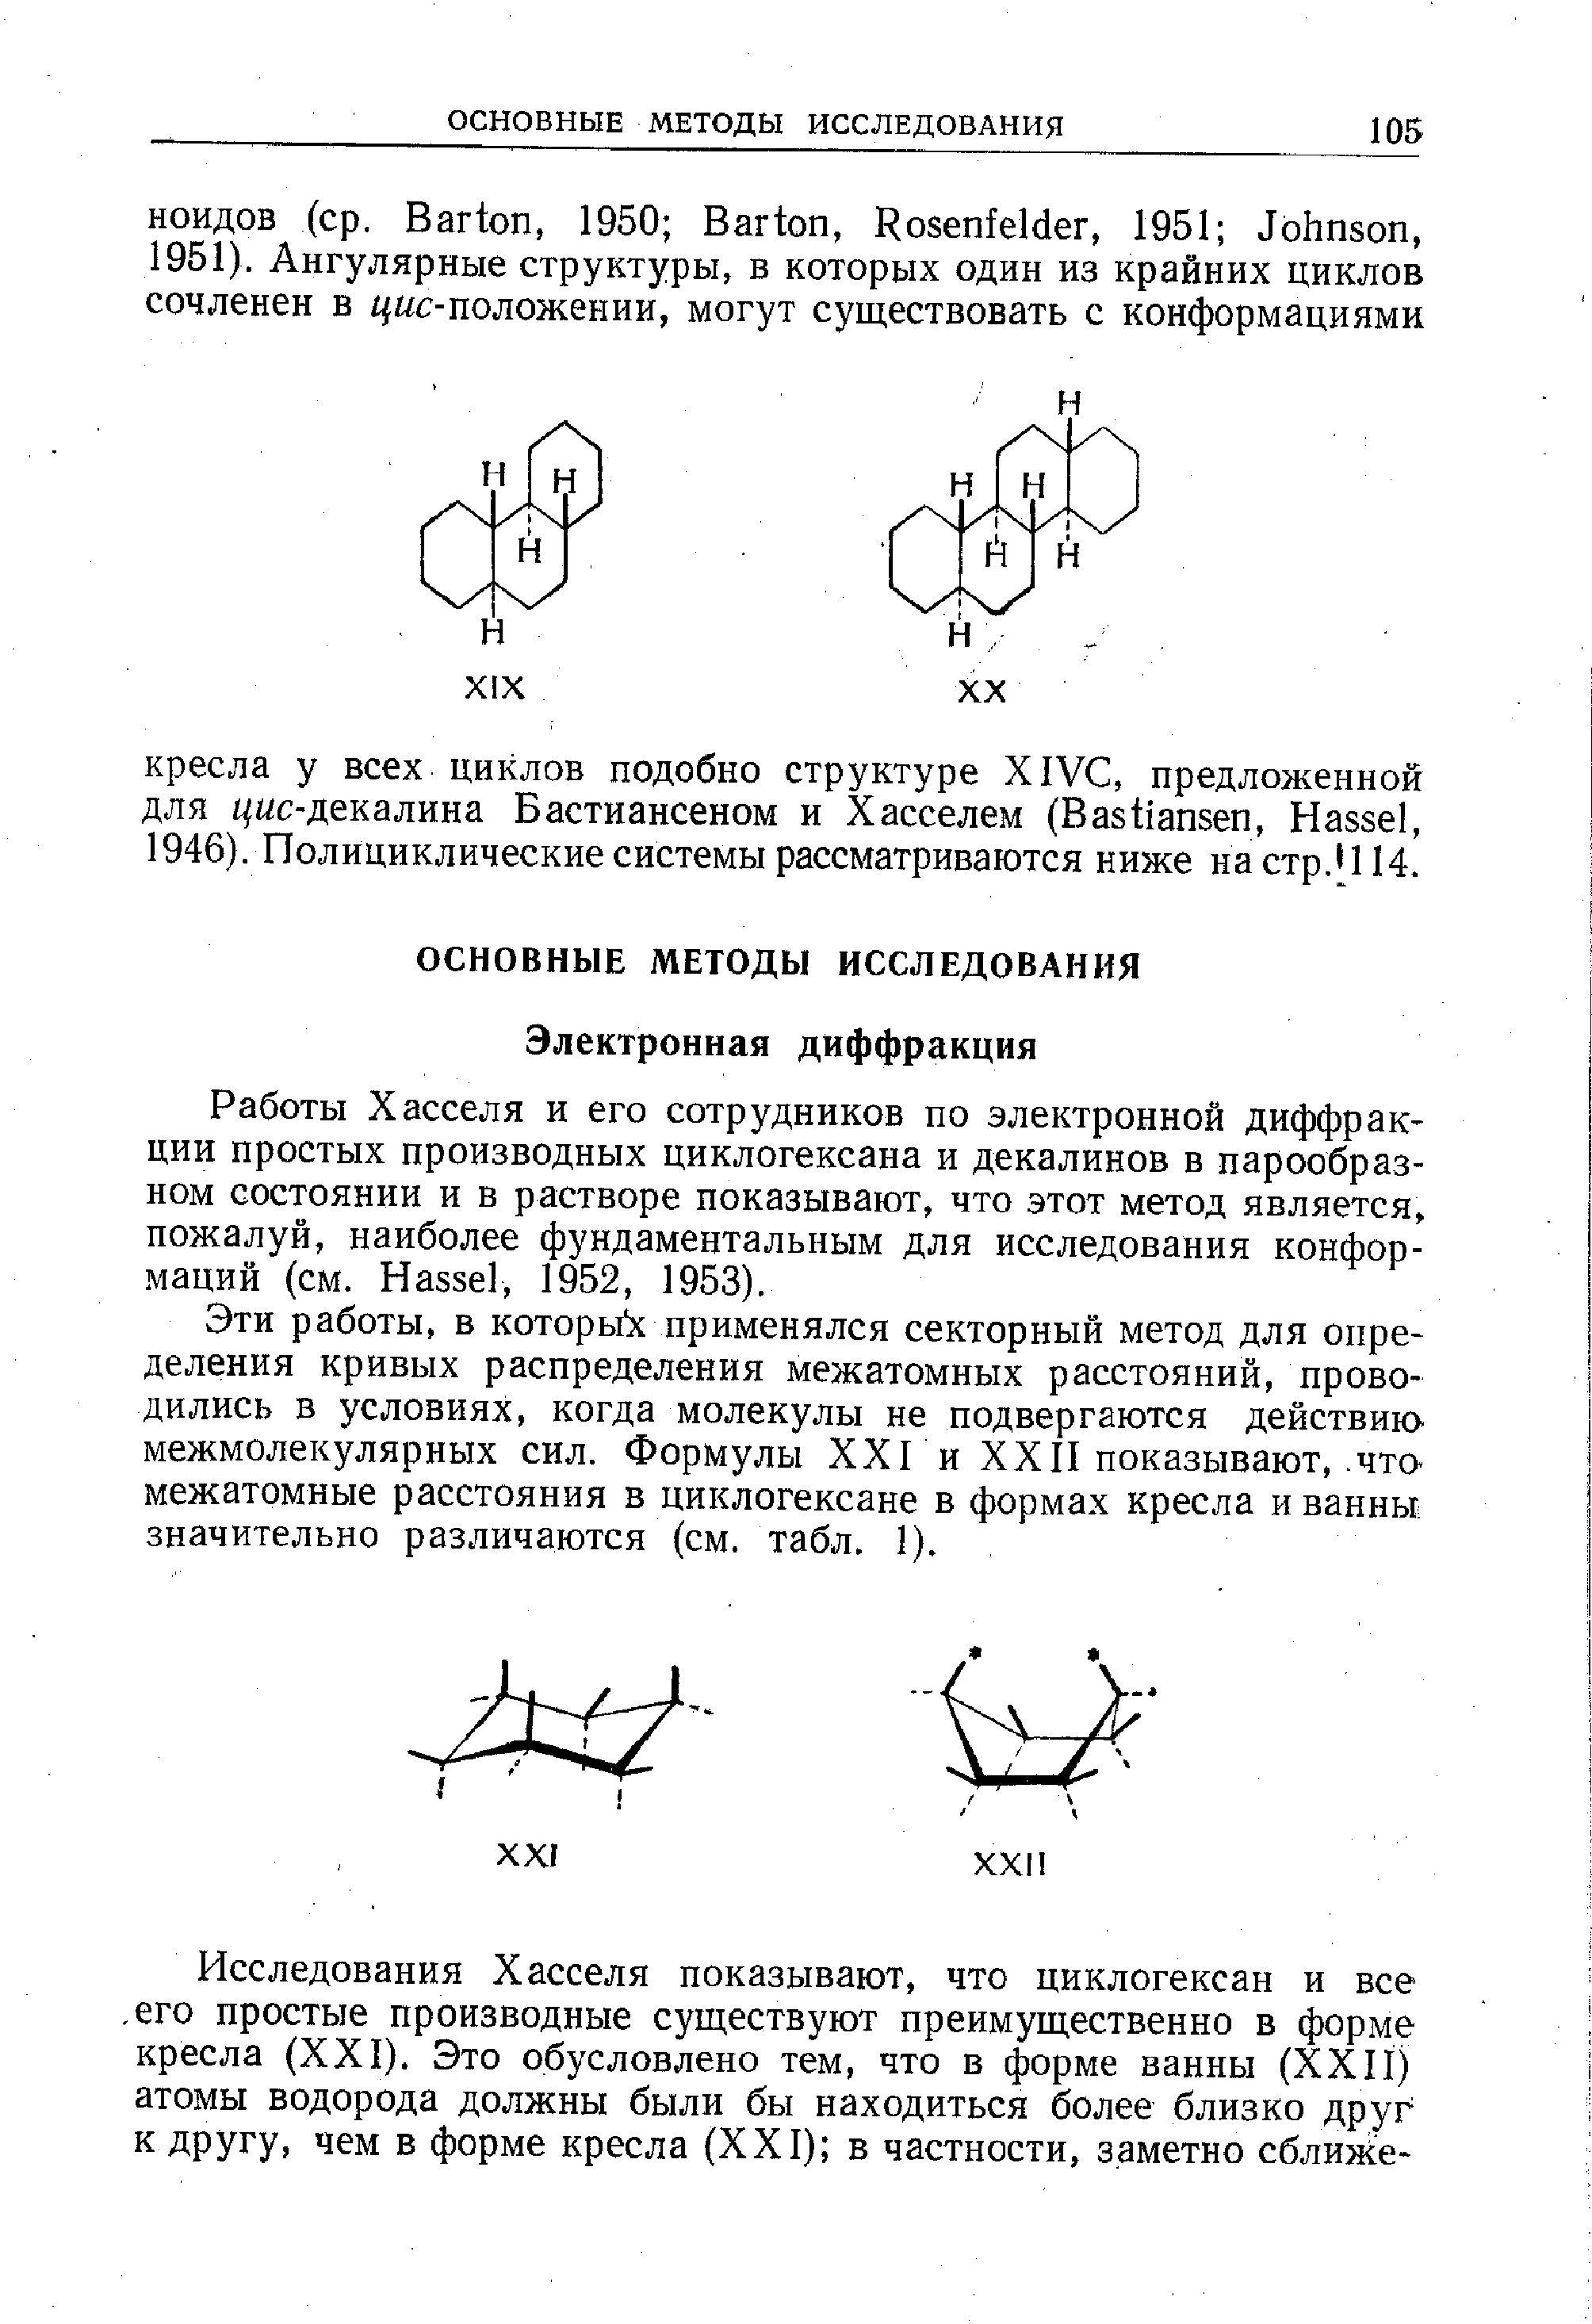 Работы Хасселя и его сотрудников по электронной диффракции простых производных циклогексана и декалинов в парообразном состоянии и в растворе показывают, что этот метод является, пожалуй, наиболее фундаментальным для исследования конформаций (см. Hassel, 1952, 1953).